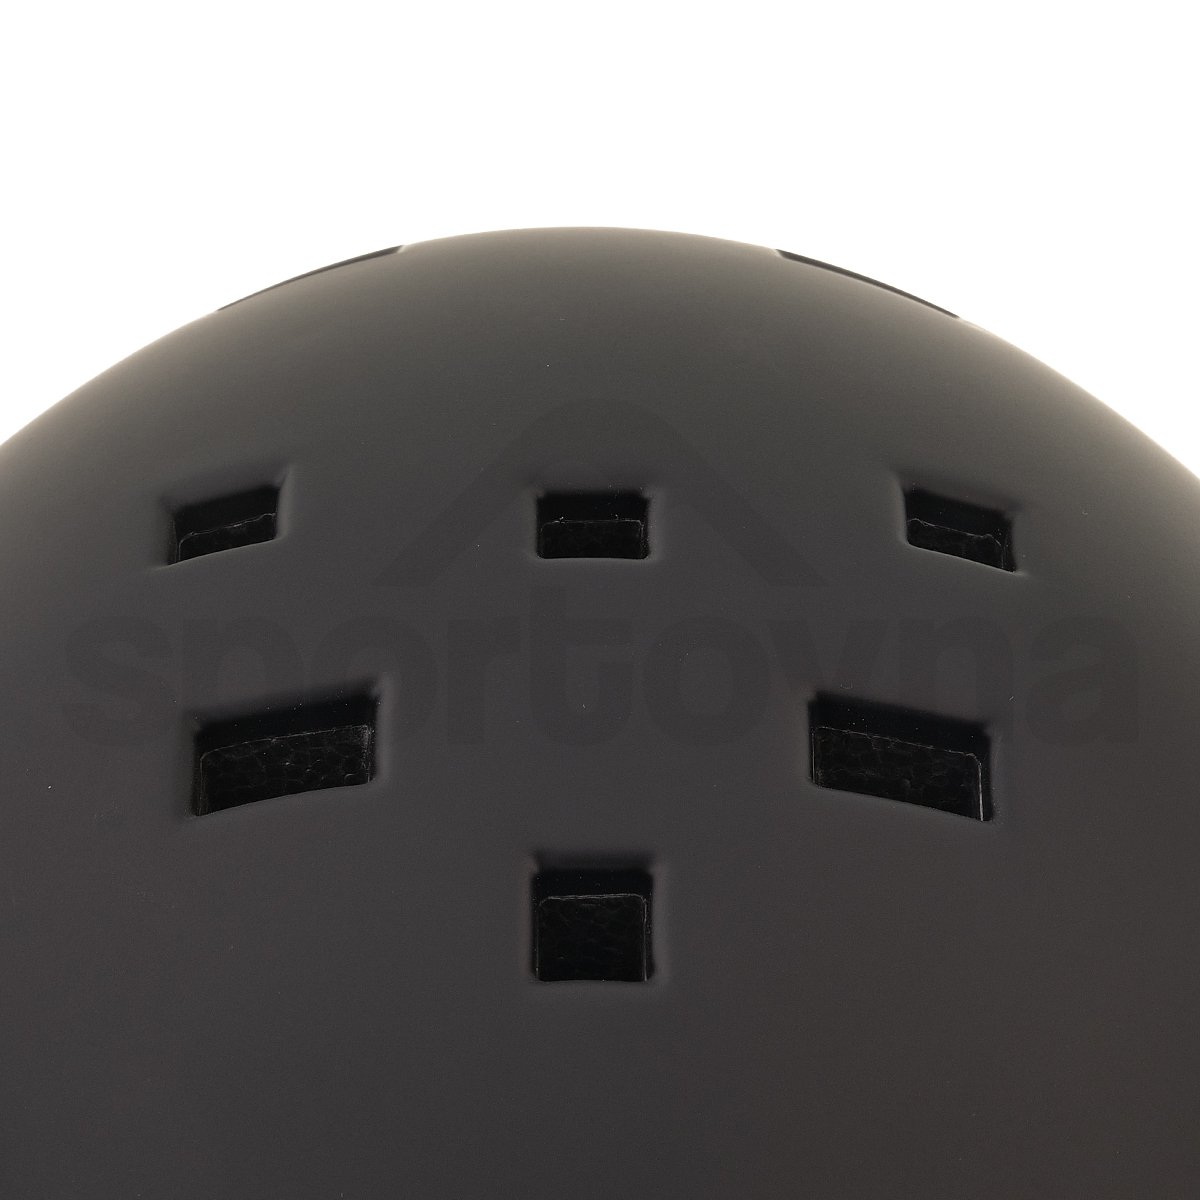 Lyžařská helma Osbe New Light - černá